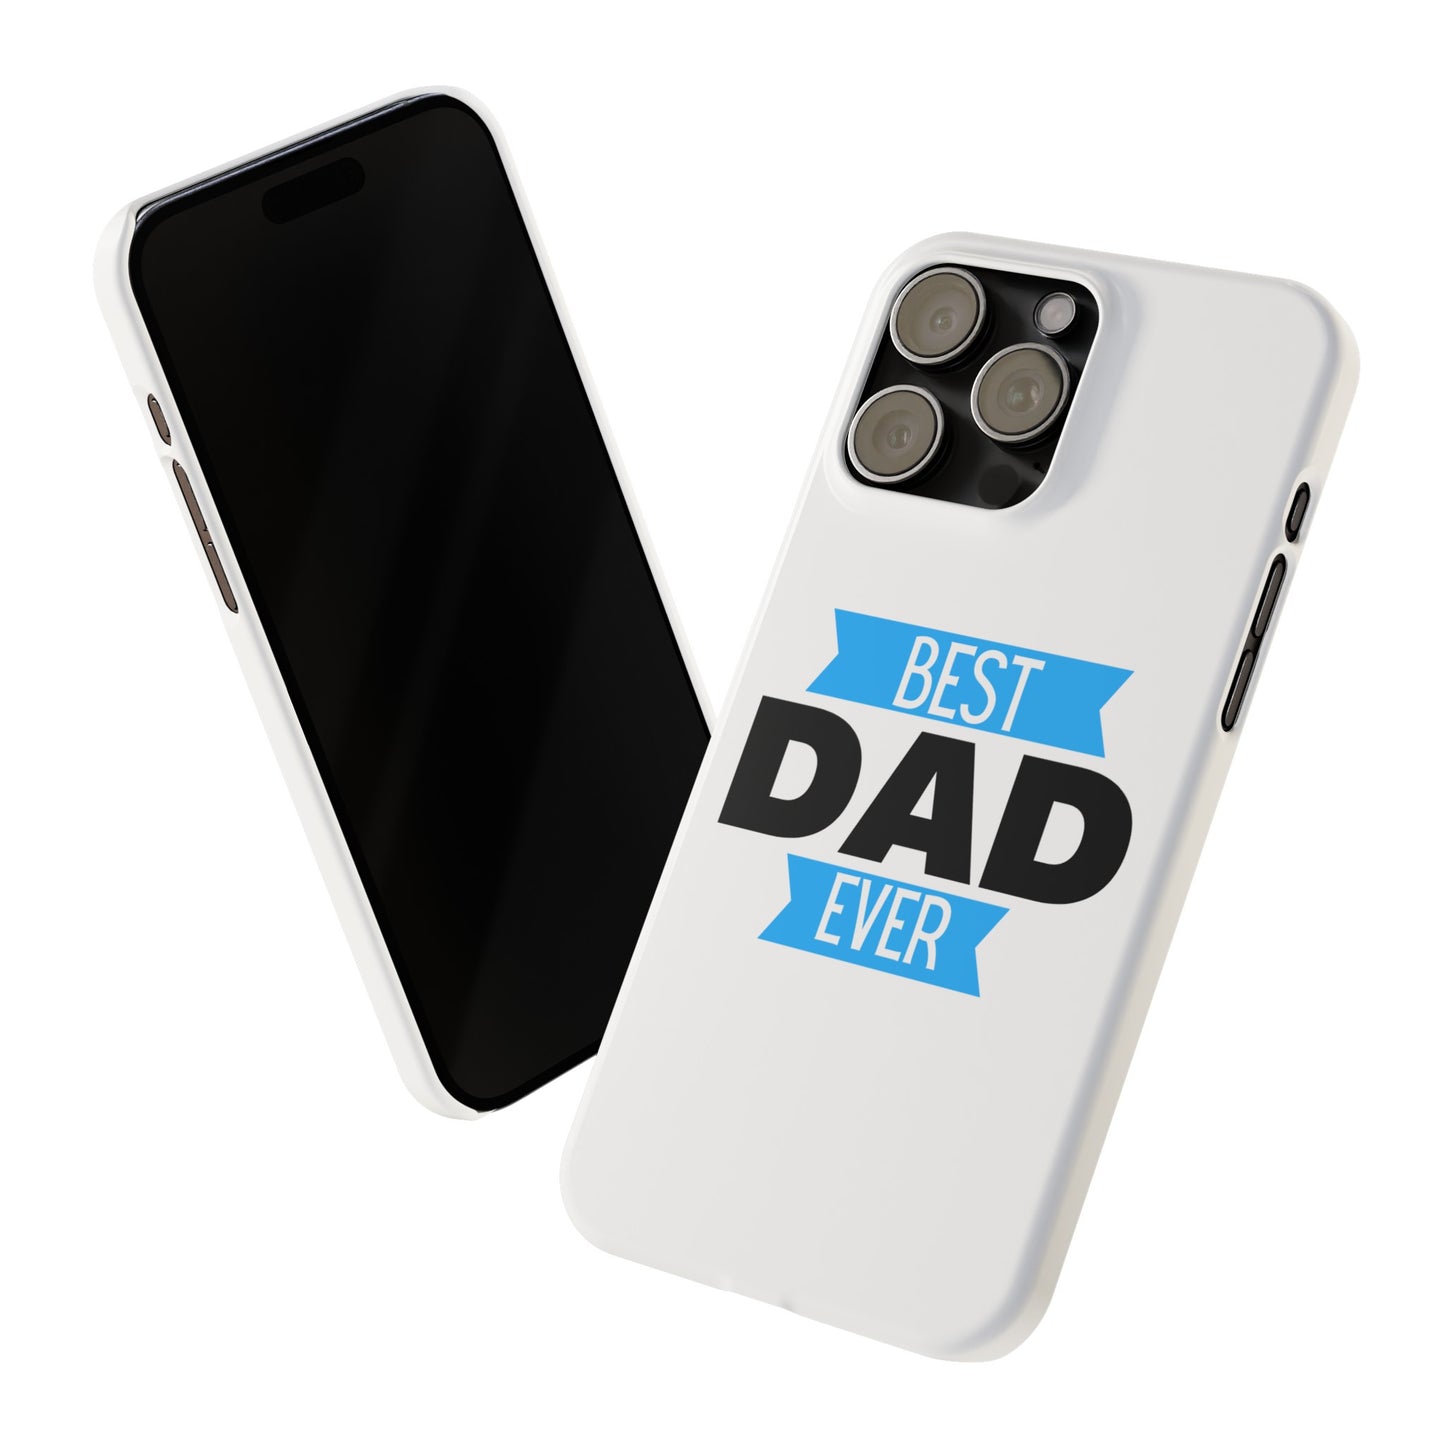 "Best Dad Ever" Slim Phone Case